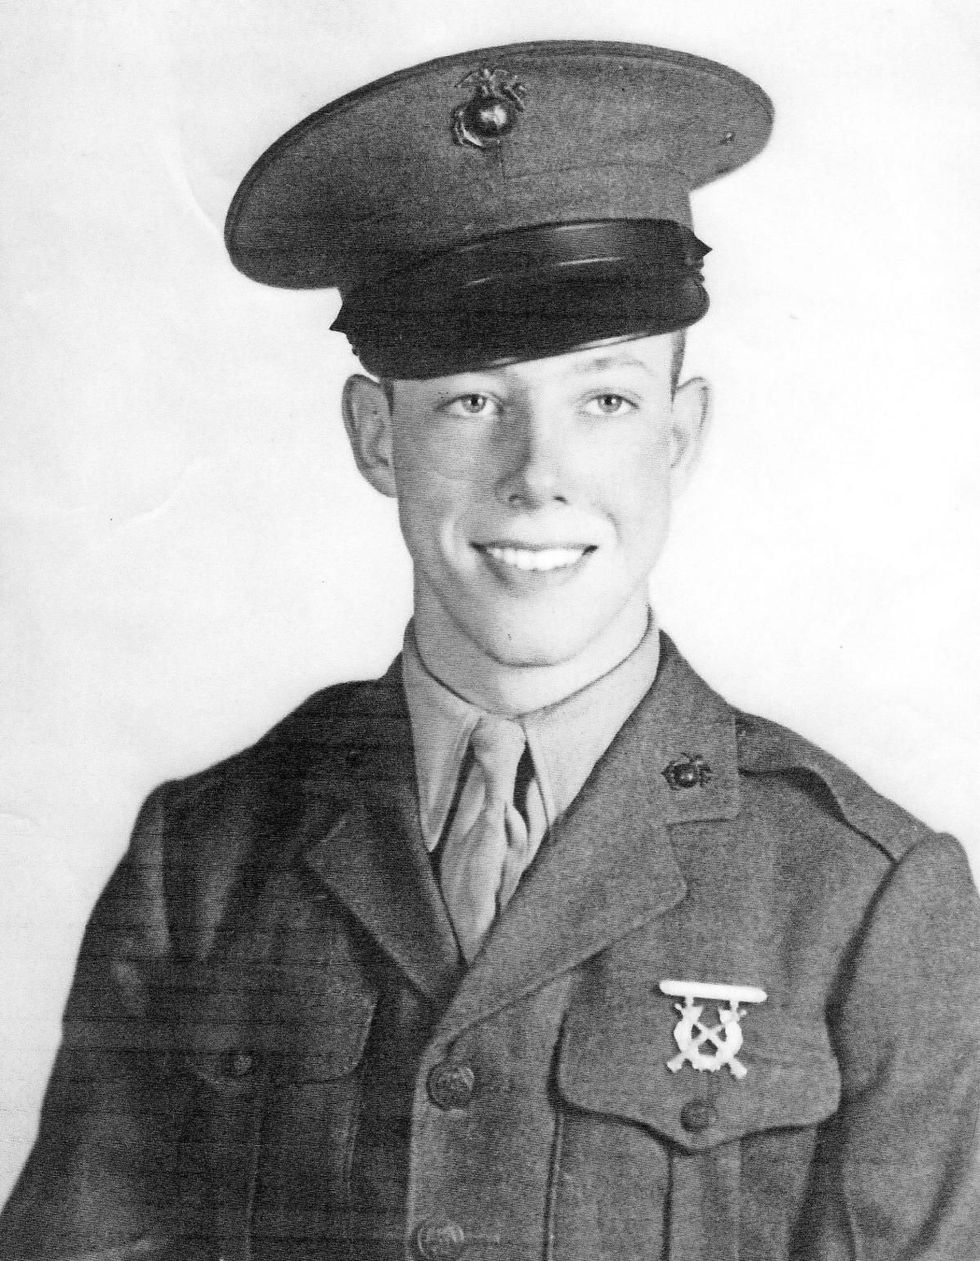 Bill Montgomery was 18 toen hij het opleidingskamp van het Amerikaanse Marine Corps inging